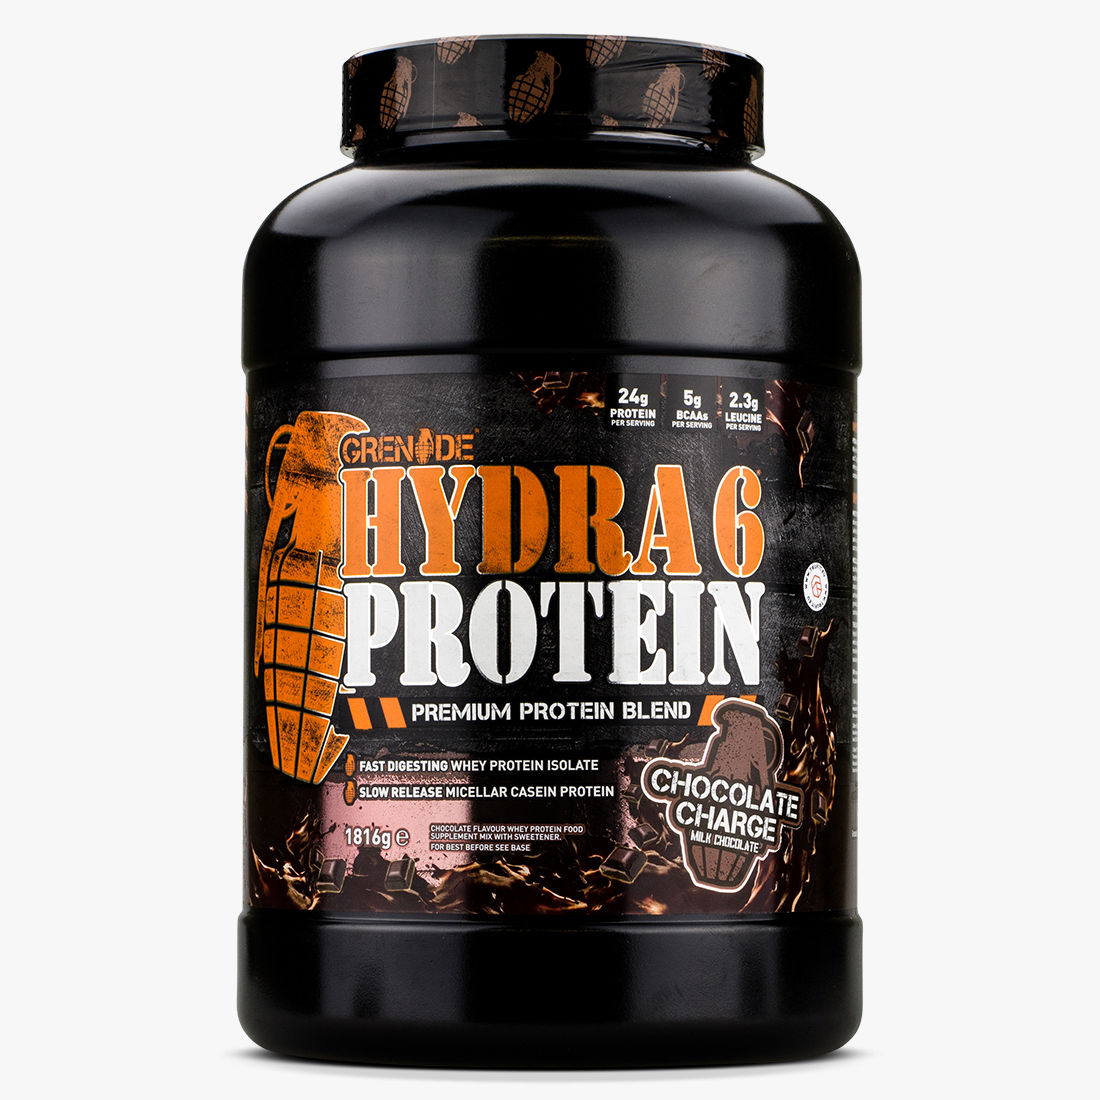 Grenade Hydra 6 Protein Casein/Whey Isolate Cookie Vanilla Choc Flavours 1816g 